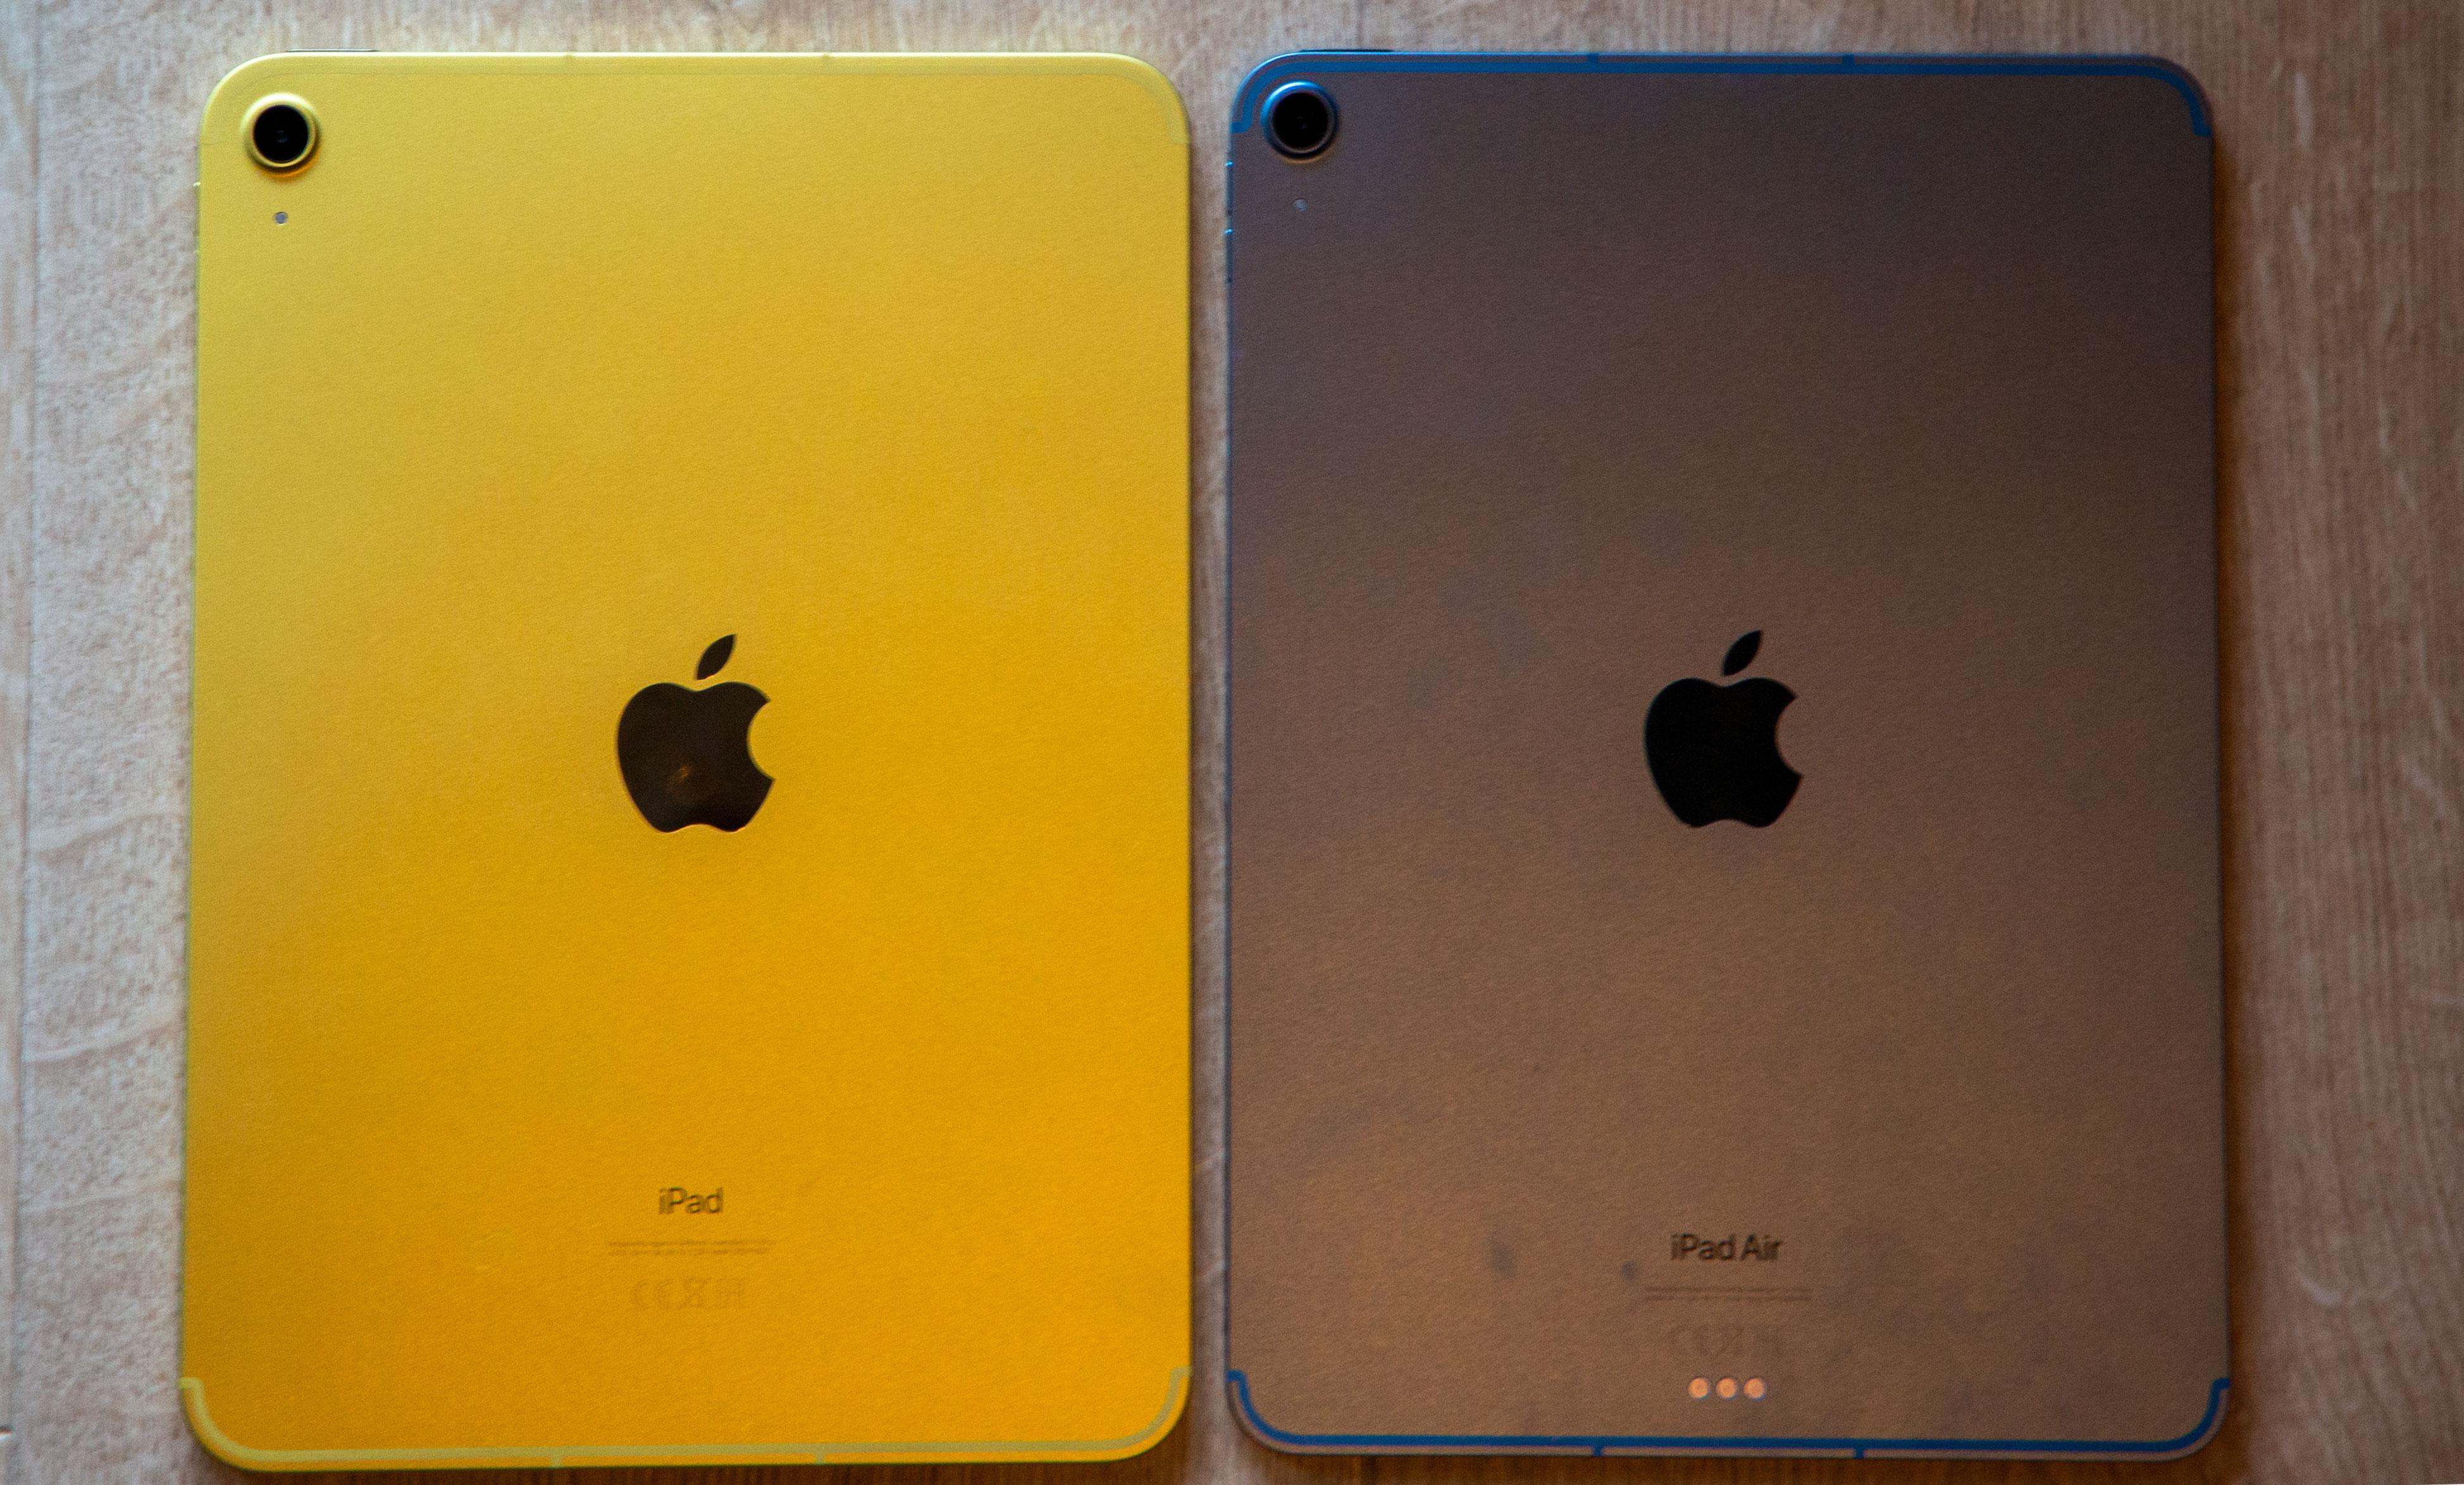 iPad til venstre, iPad Air til høyre. Ganske like, altså. 